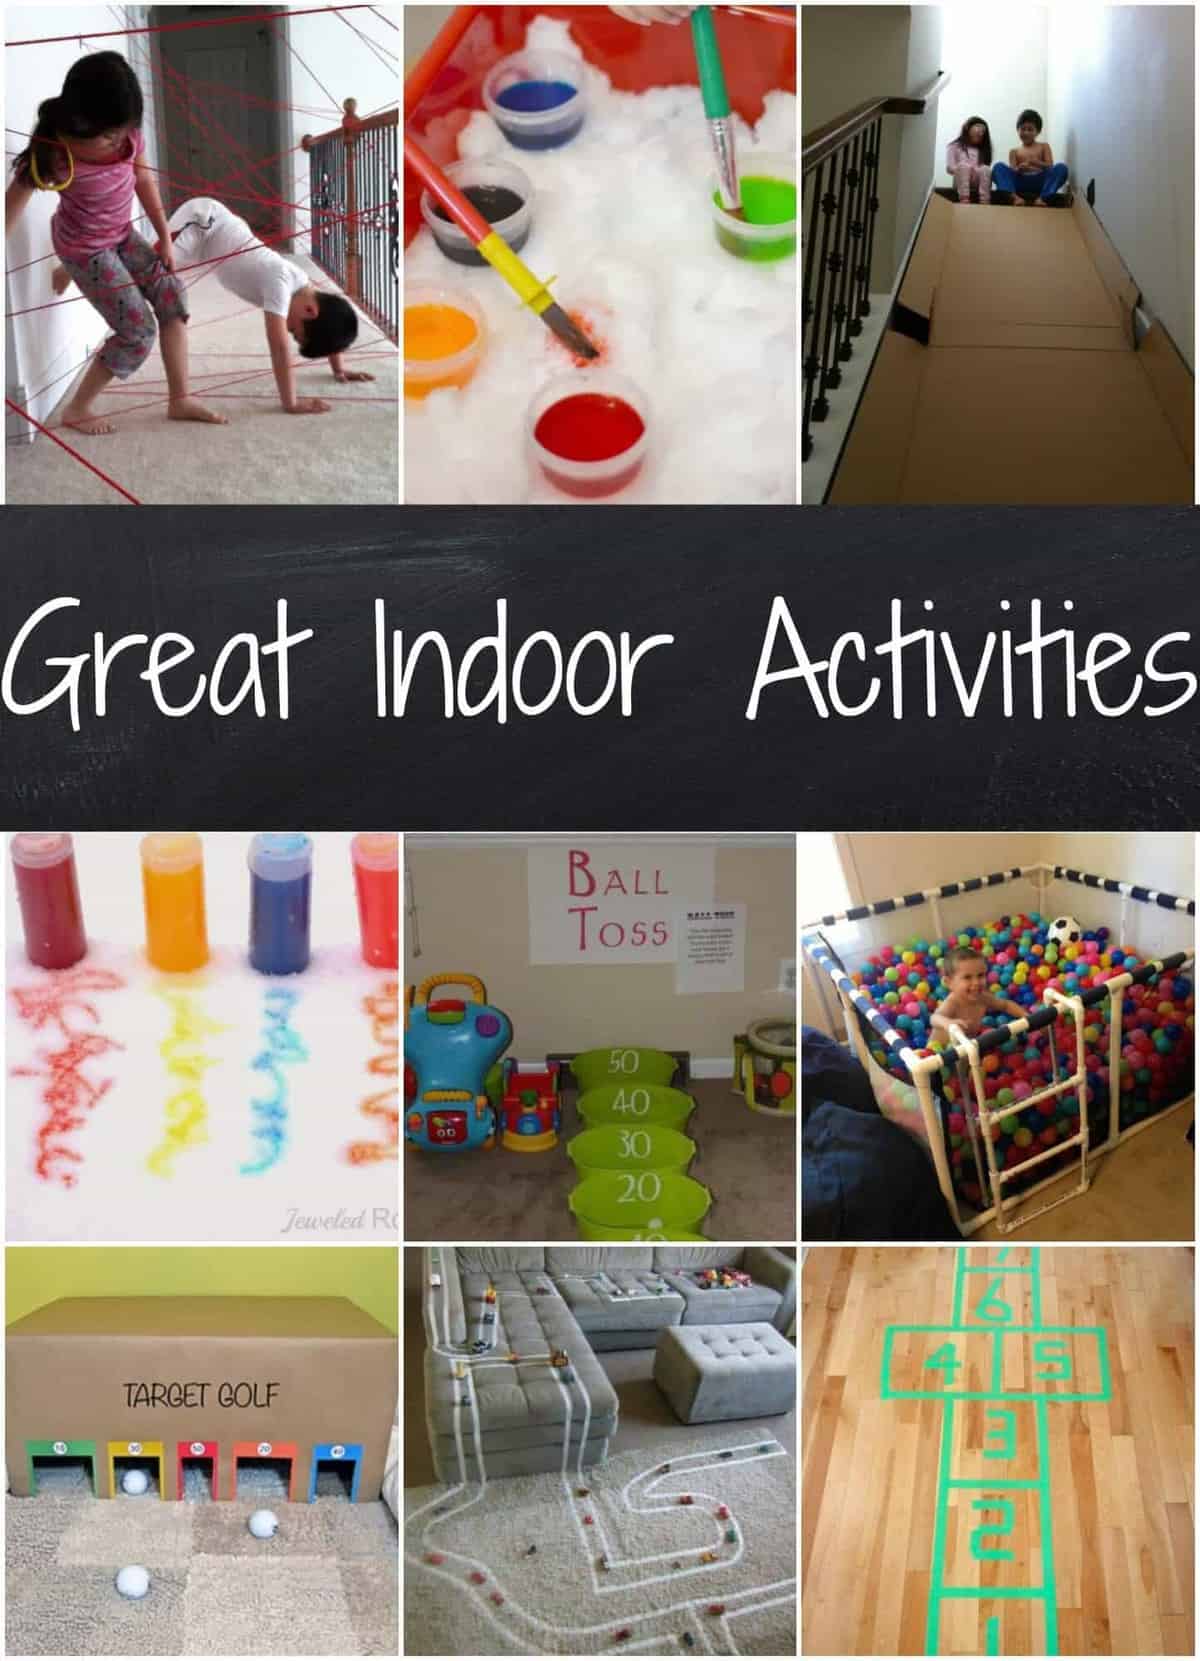 Great indoor activities for kids